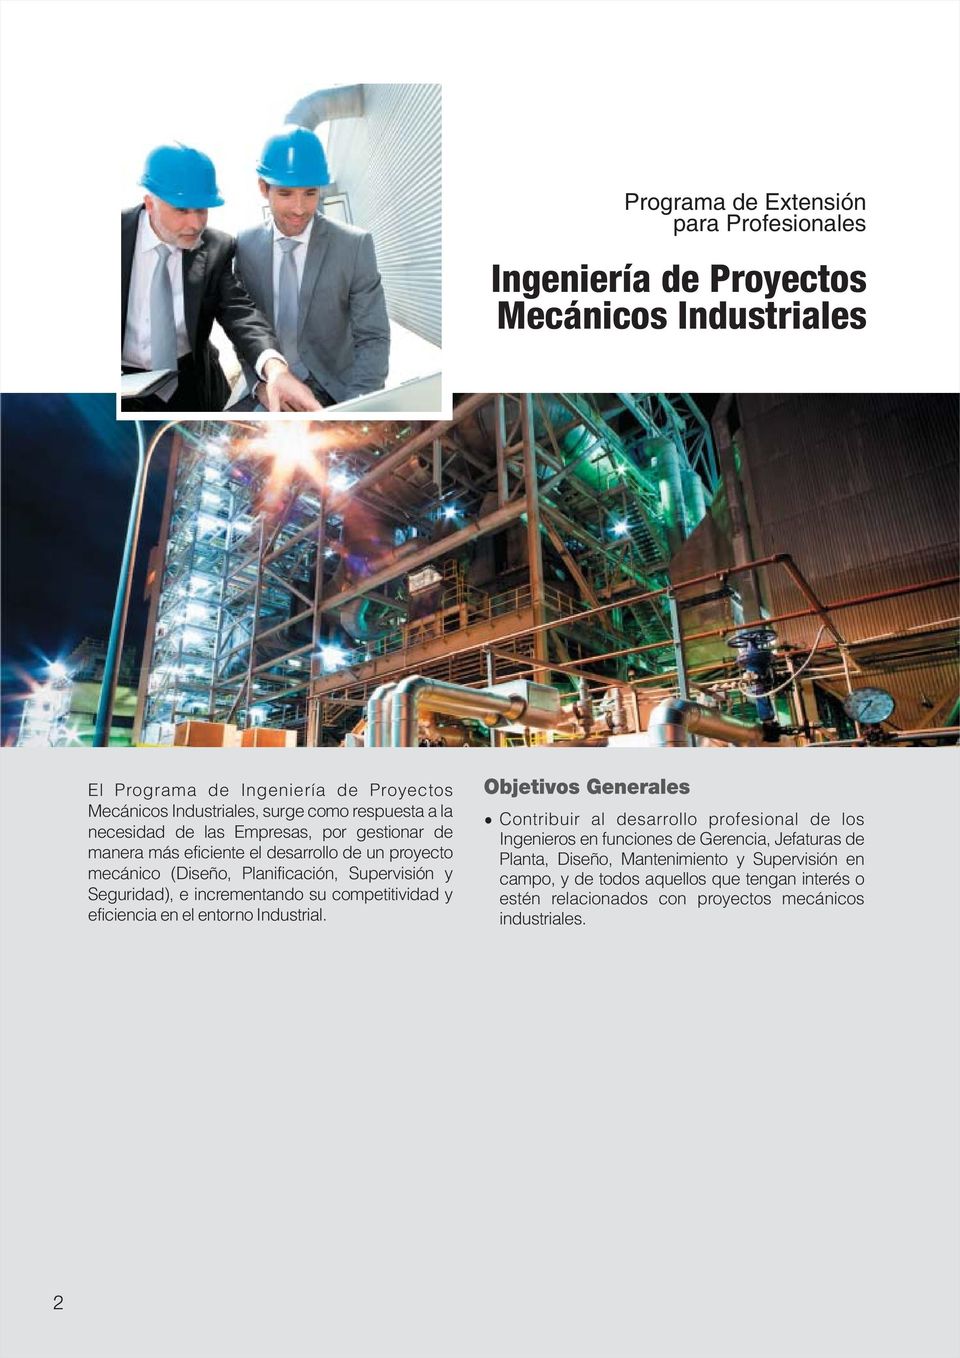 Seguridad), e incrementando su competitividad y eficiencia en el entorno Industrial.